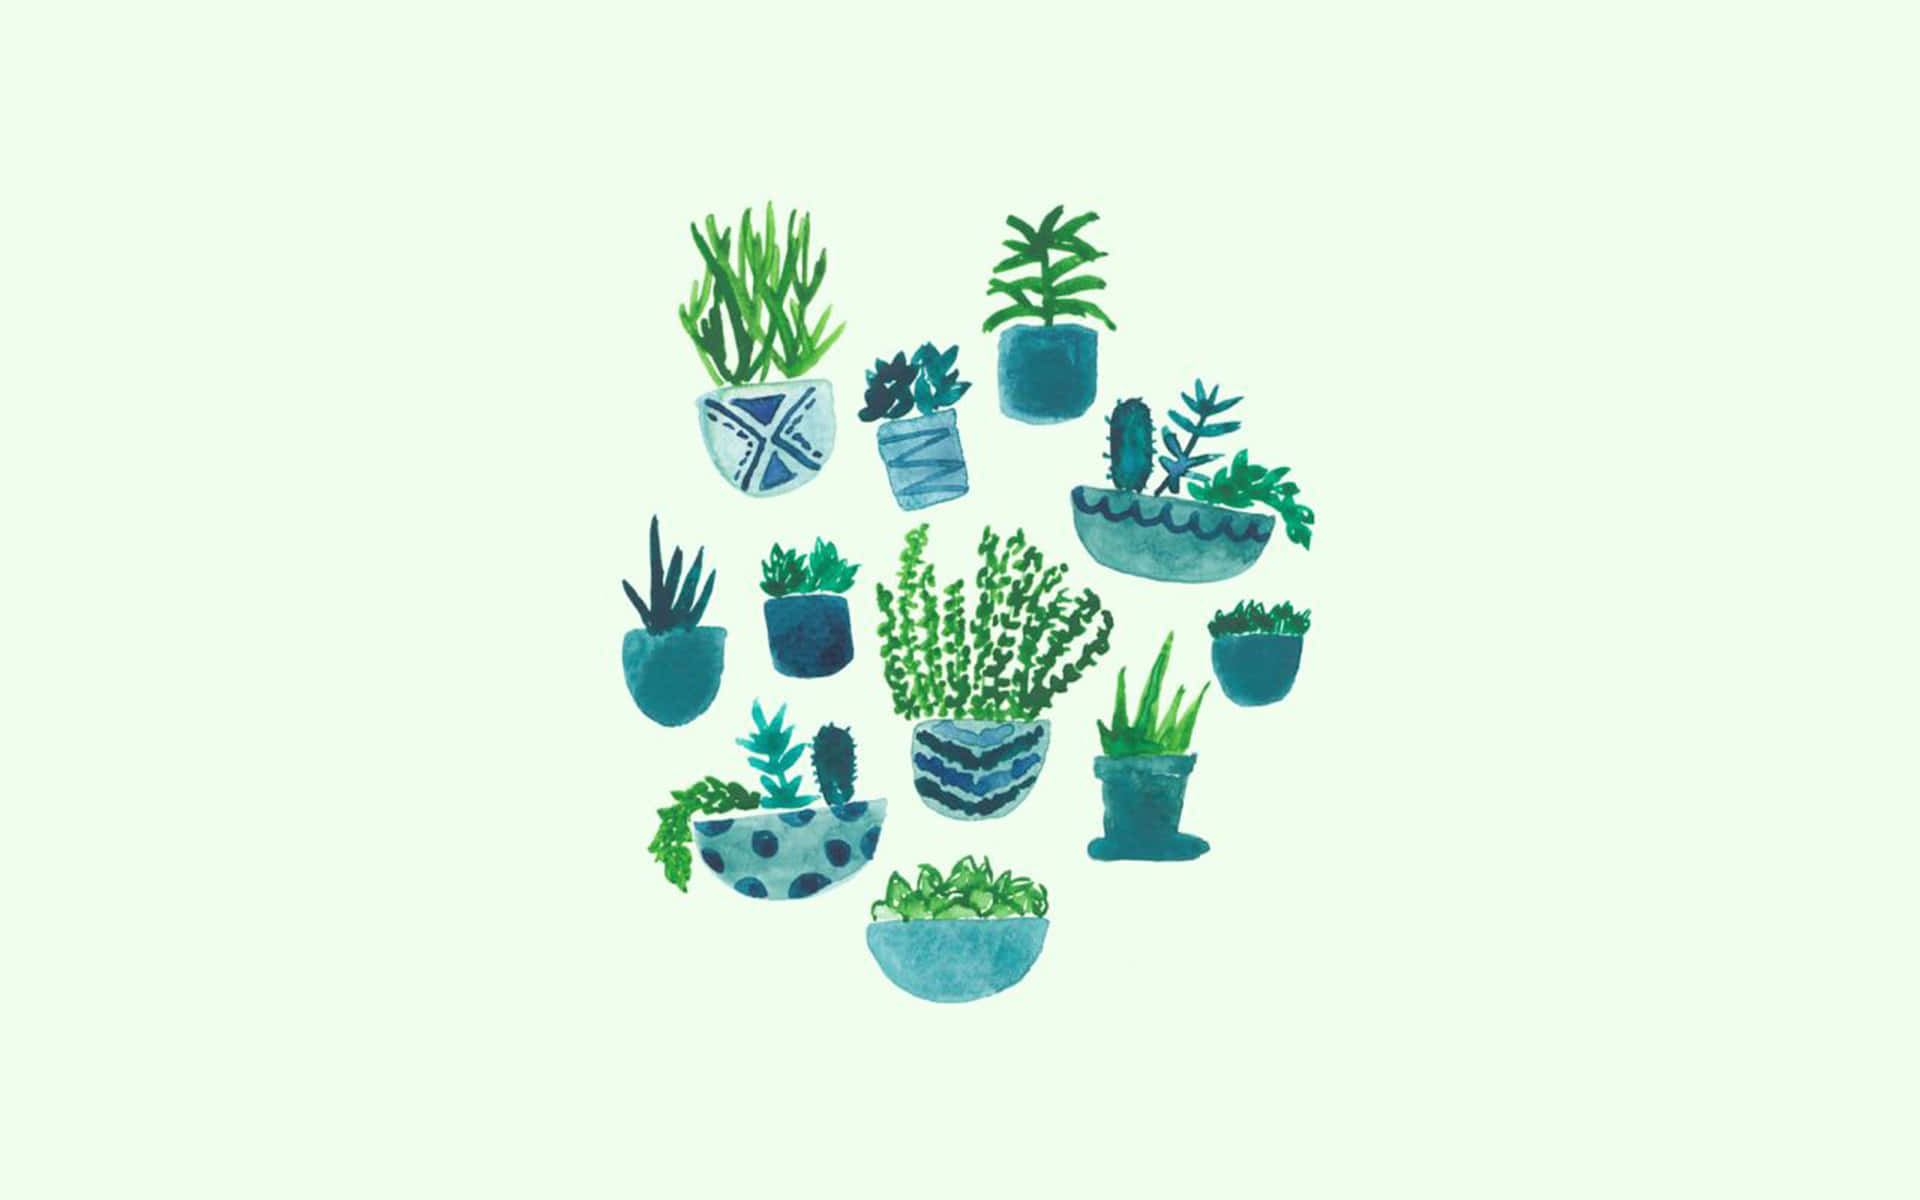 Olive Greenaesthetic Desktop Plant Doodles Wallpaper